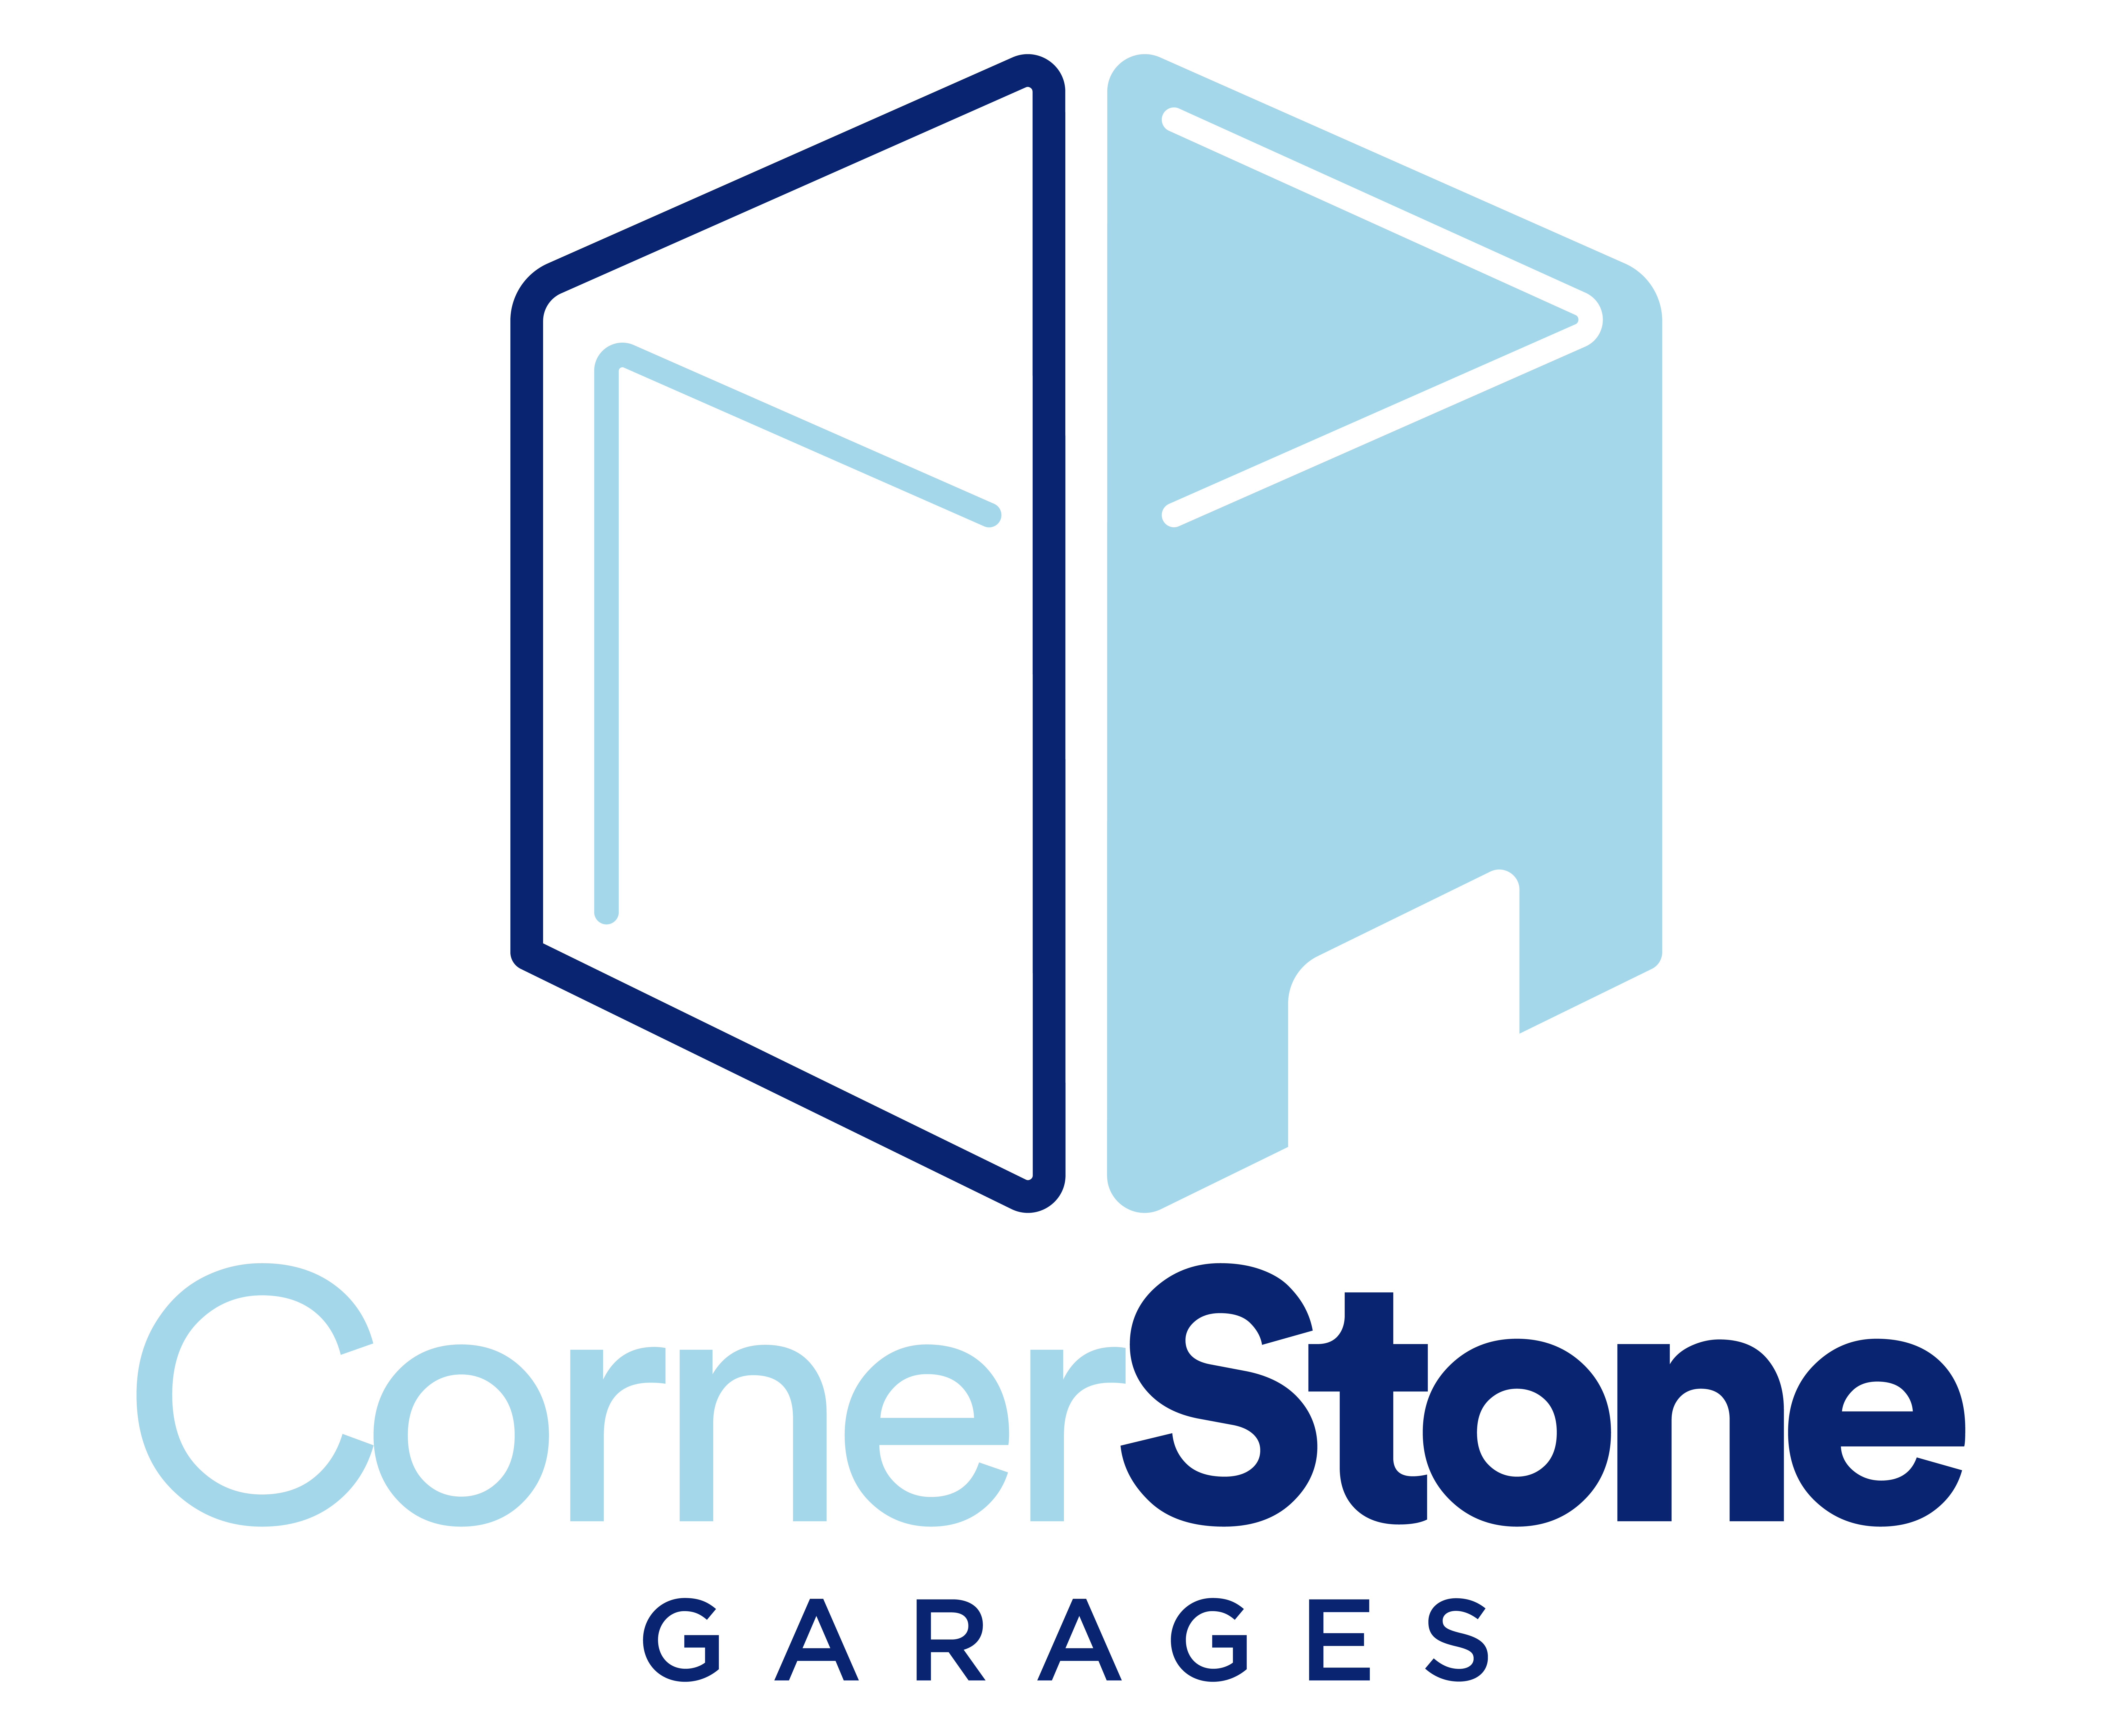 Cornerstone Garages | Marysville, OH